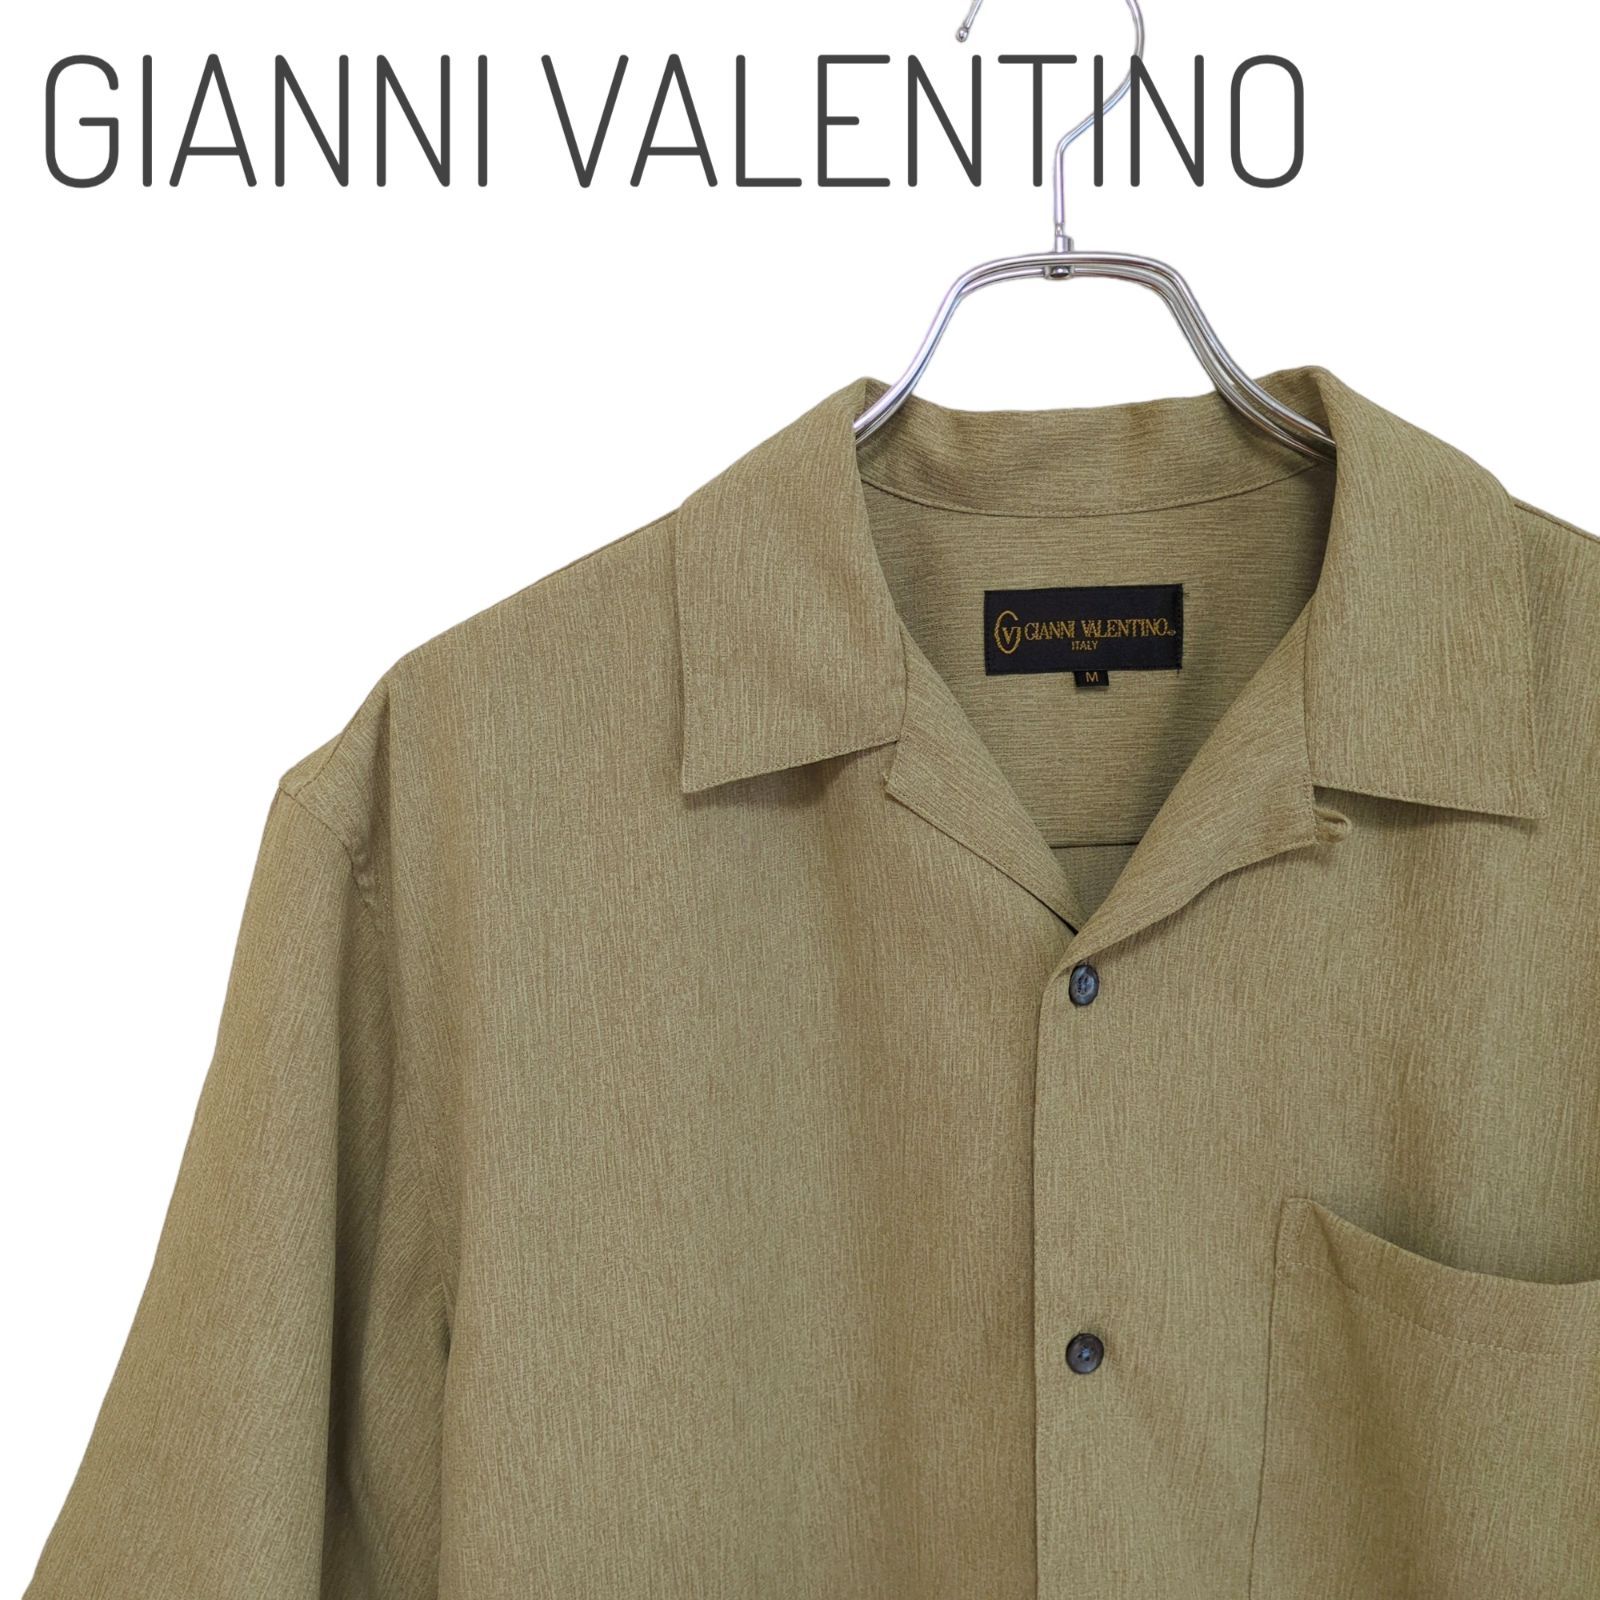 GIANNI VALENTINO ジャン二バレンチノ トップス シャツ 半袖 薄緑色